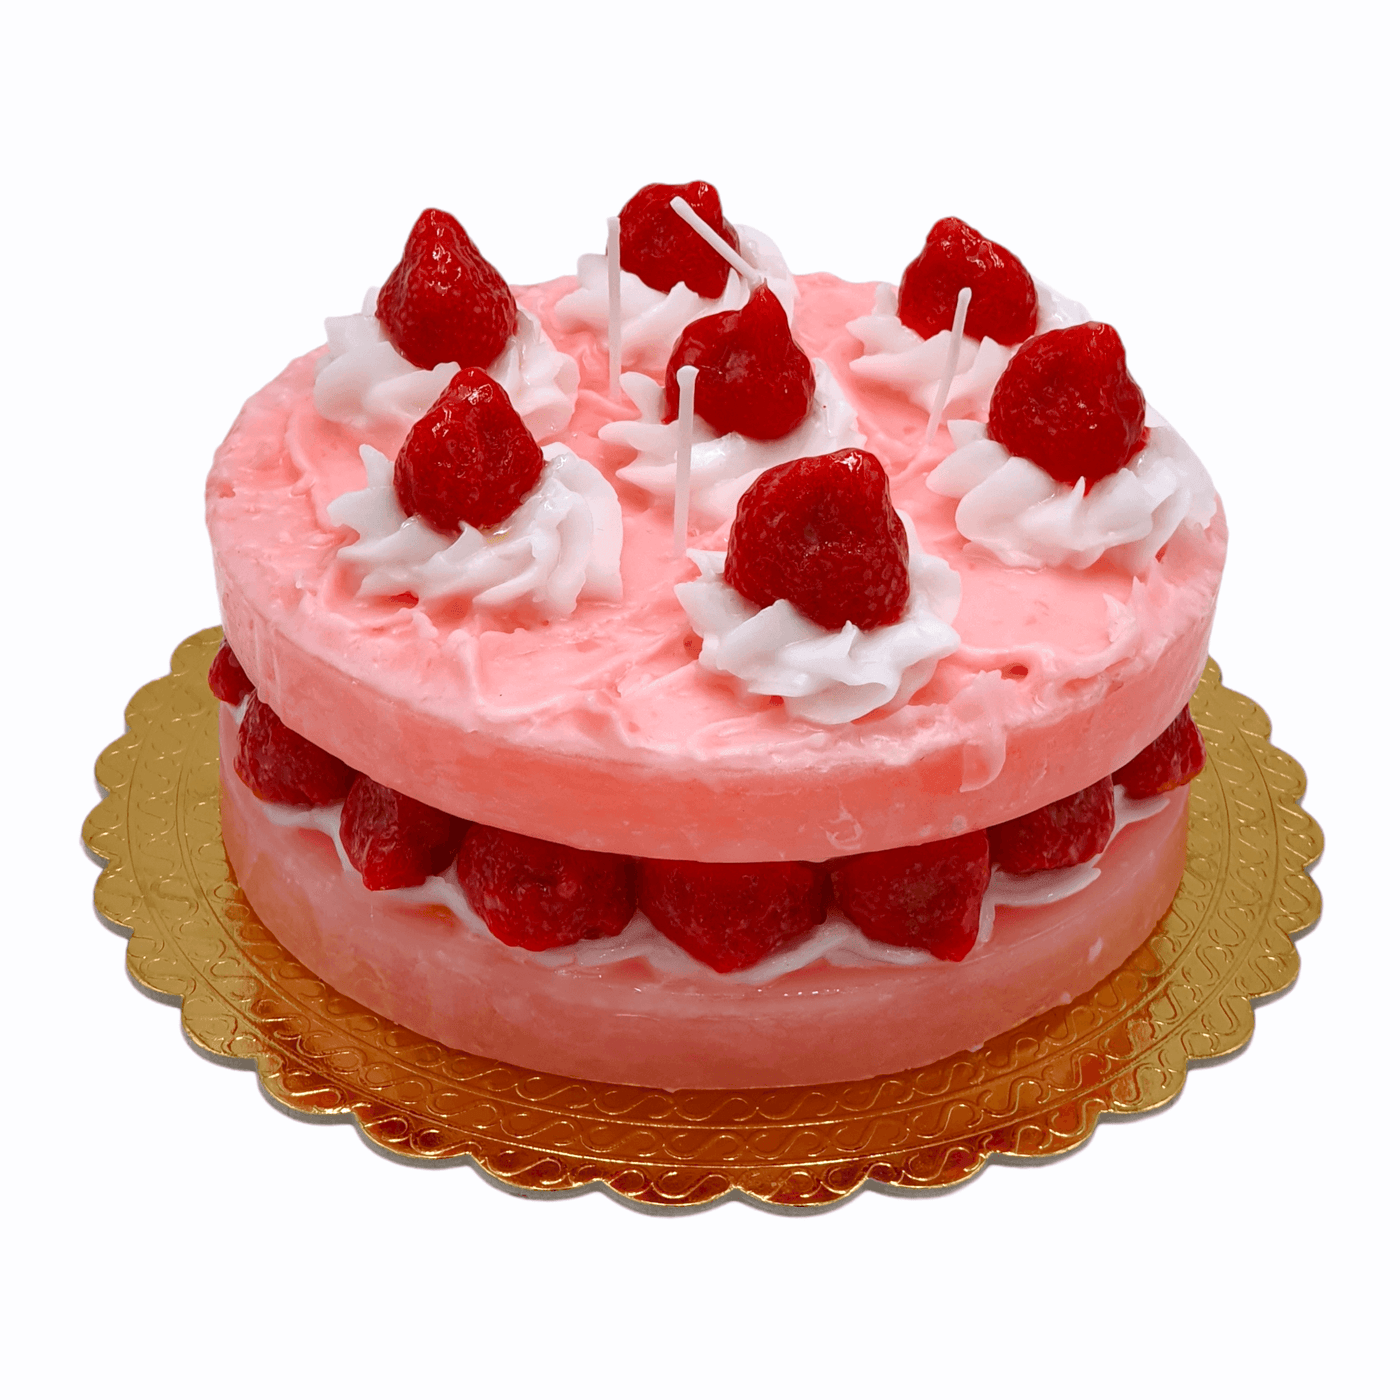 Cereria - Kerze in Form eines Layered Cake mit Erdbeeren | Ø 19 cm - Codeso Living